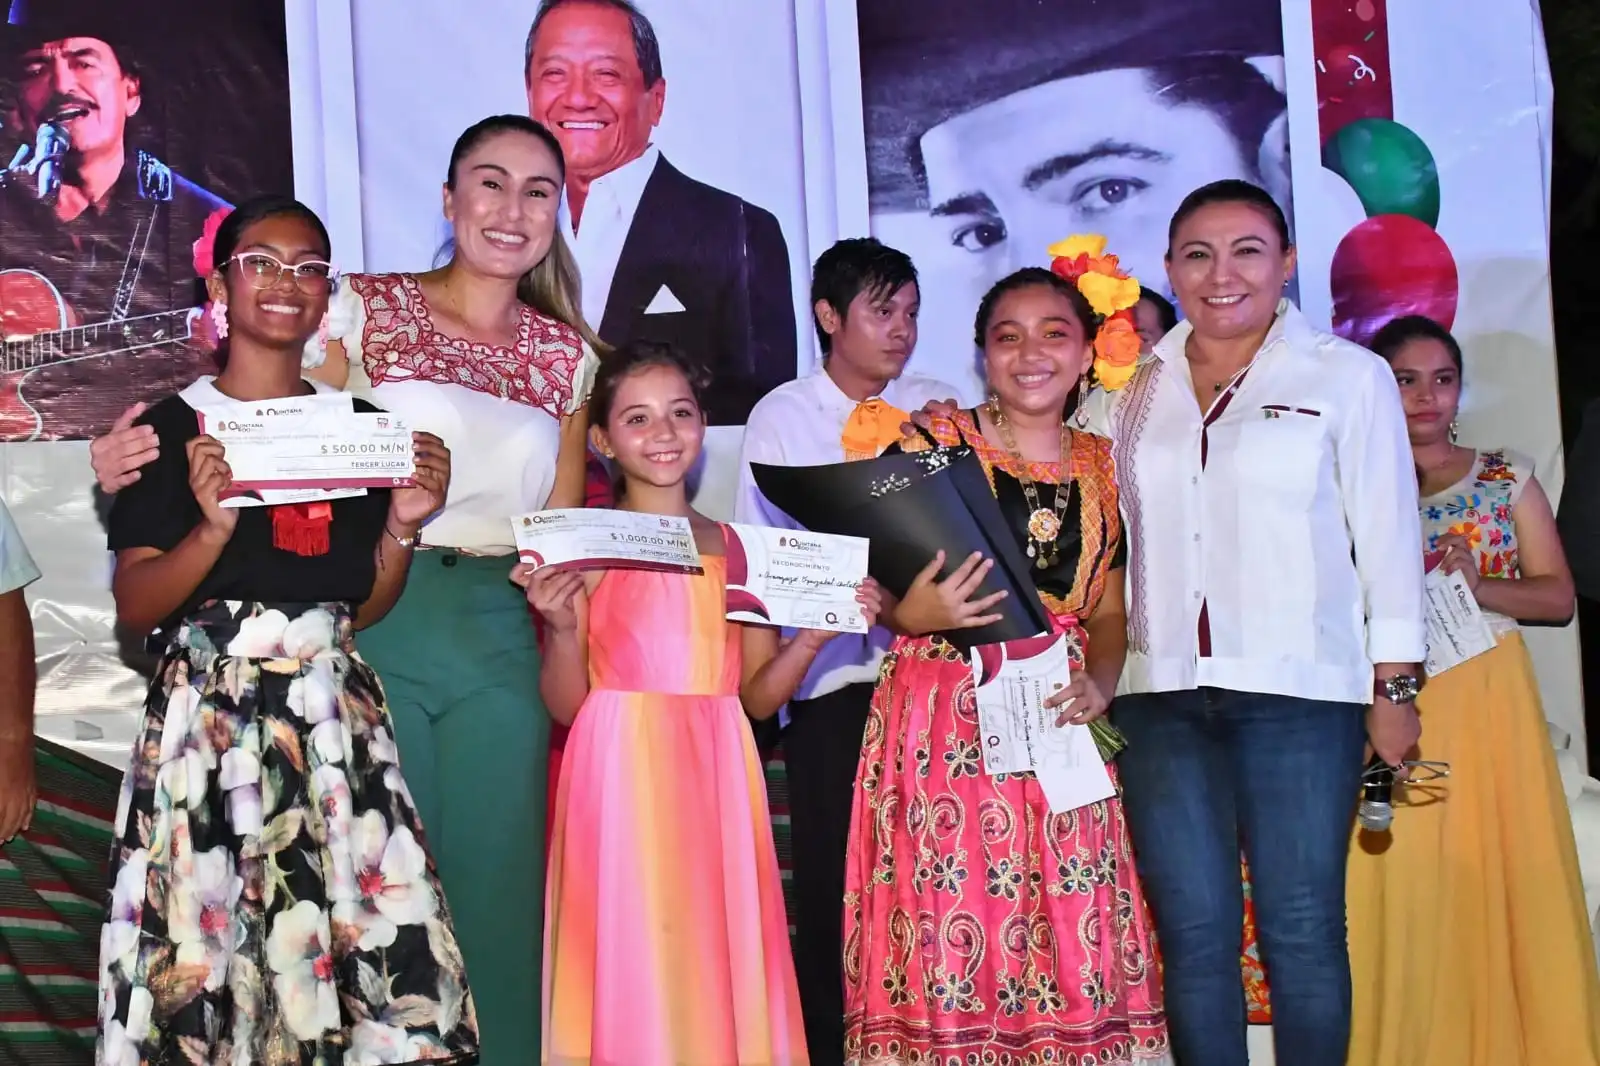 Concluye con gran éxito el XIX Concurso de la Canción Mexicana